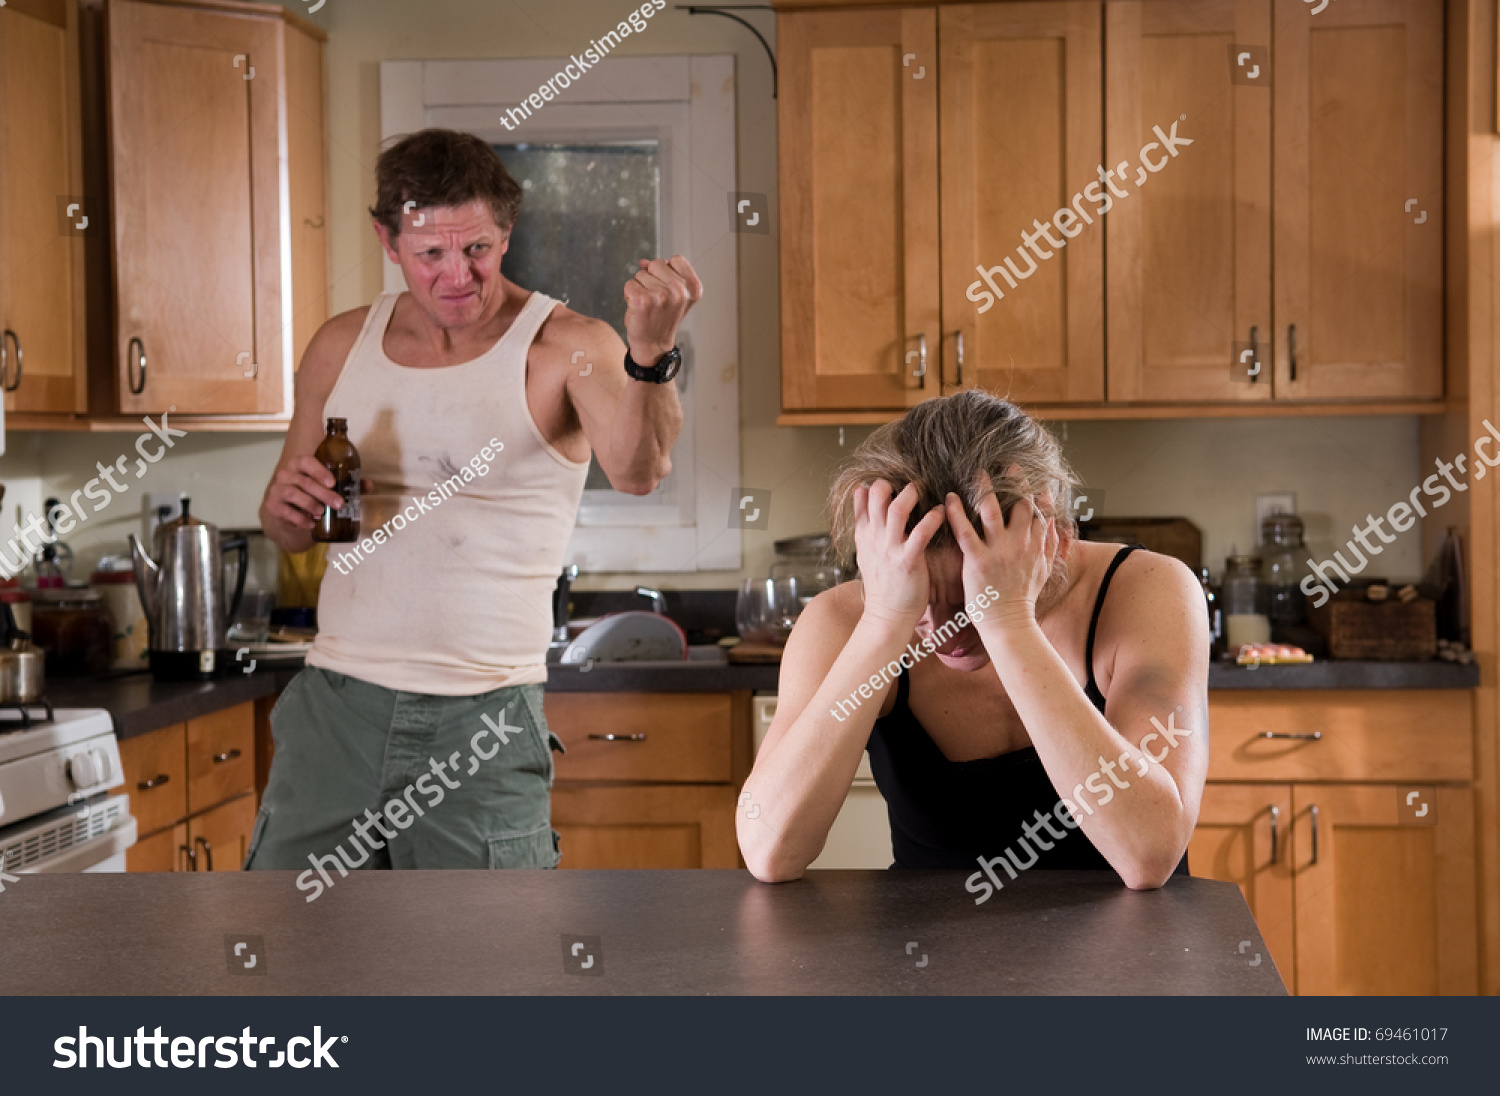 Муж пьет месяц. Мужчина и женщина на кухне. Муж и жена ссорятся на кухне. Семейная ссора на кухне. Ссора на кухне мужа и жены.